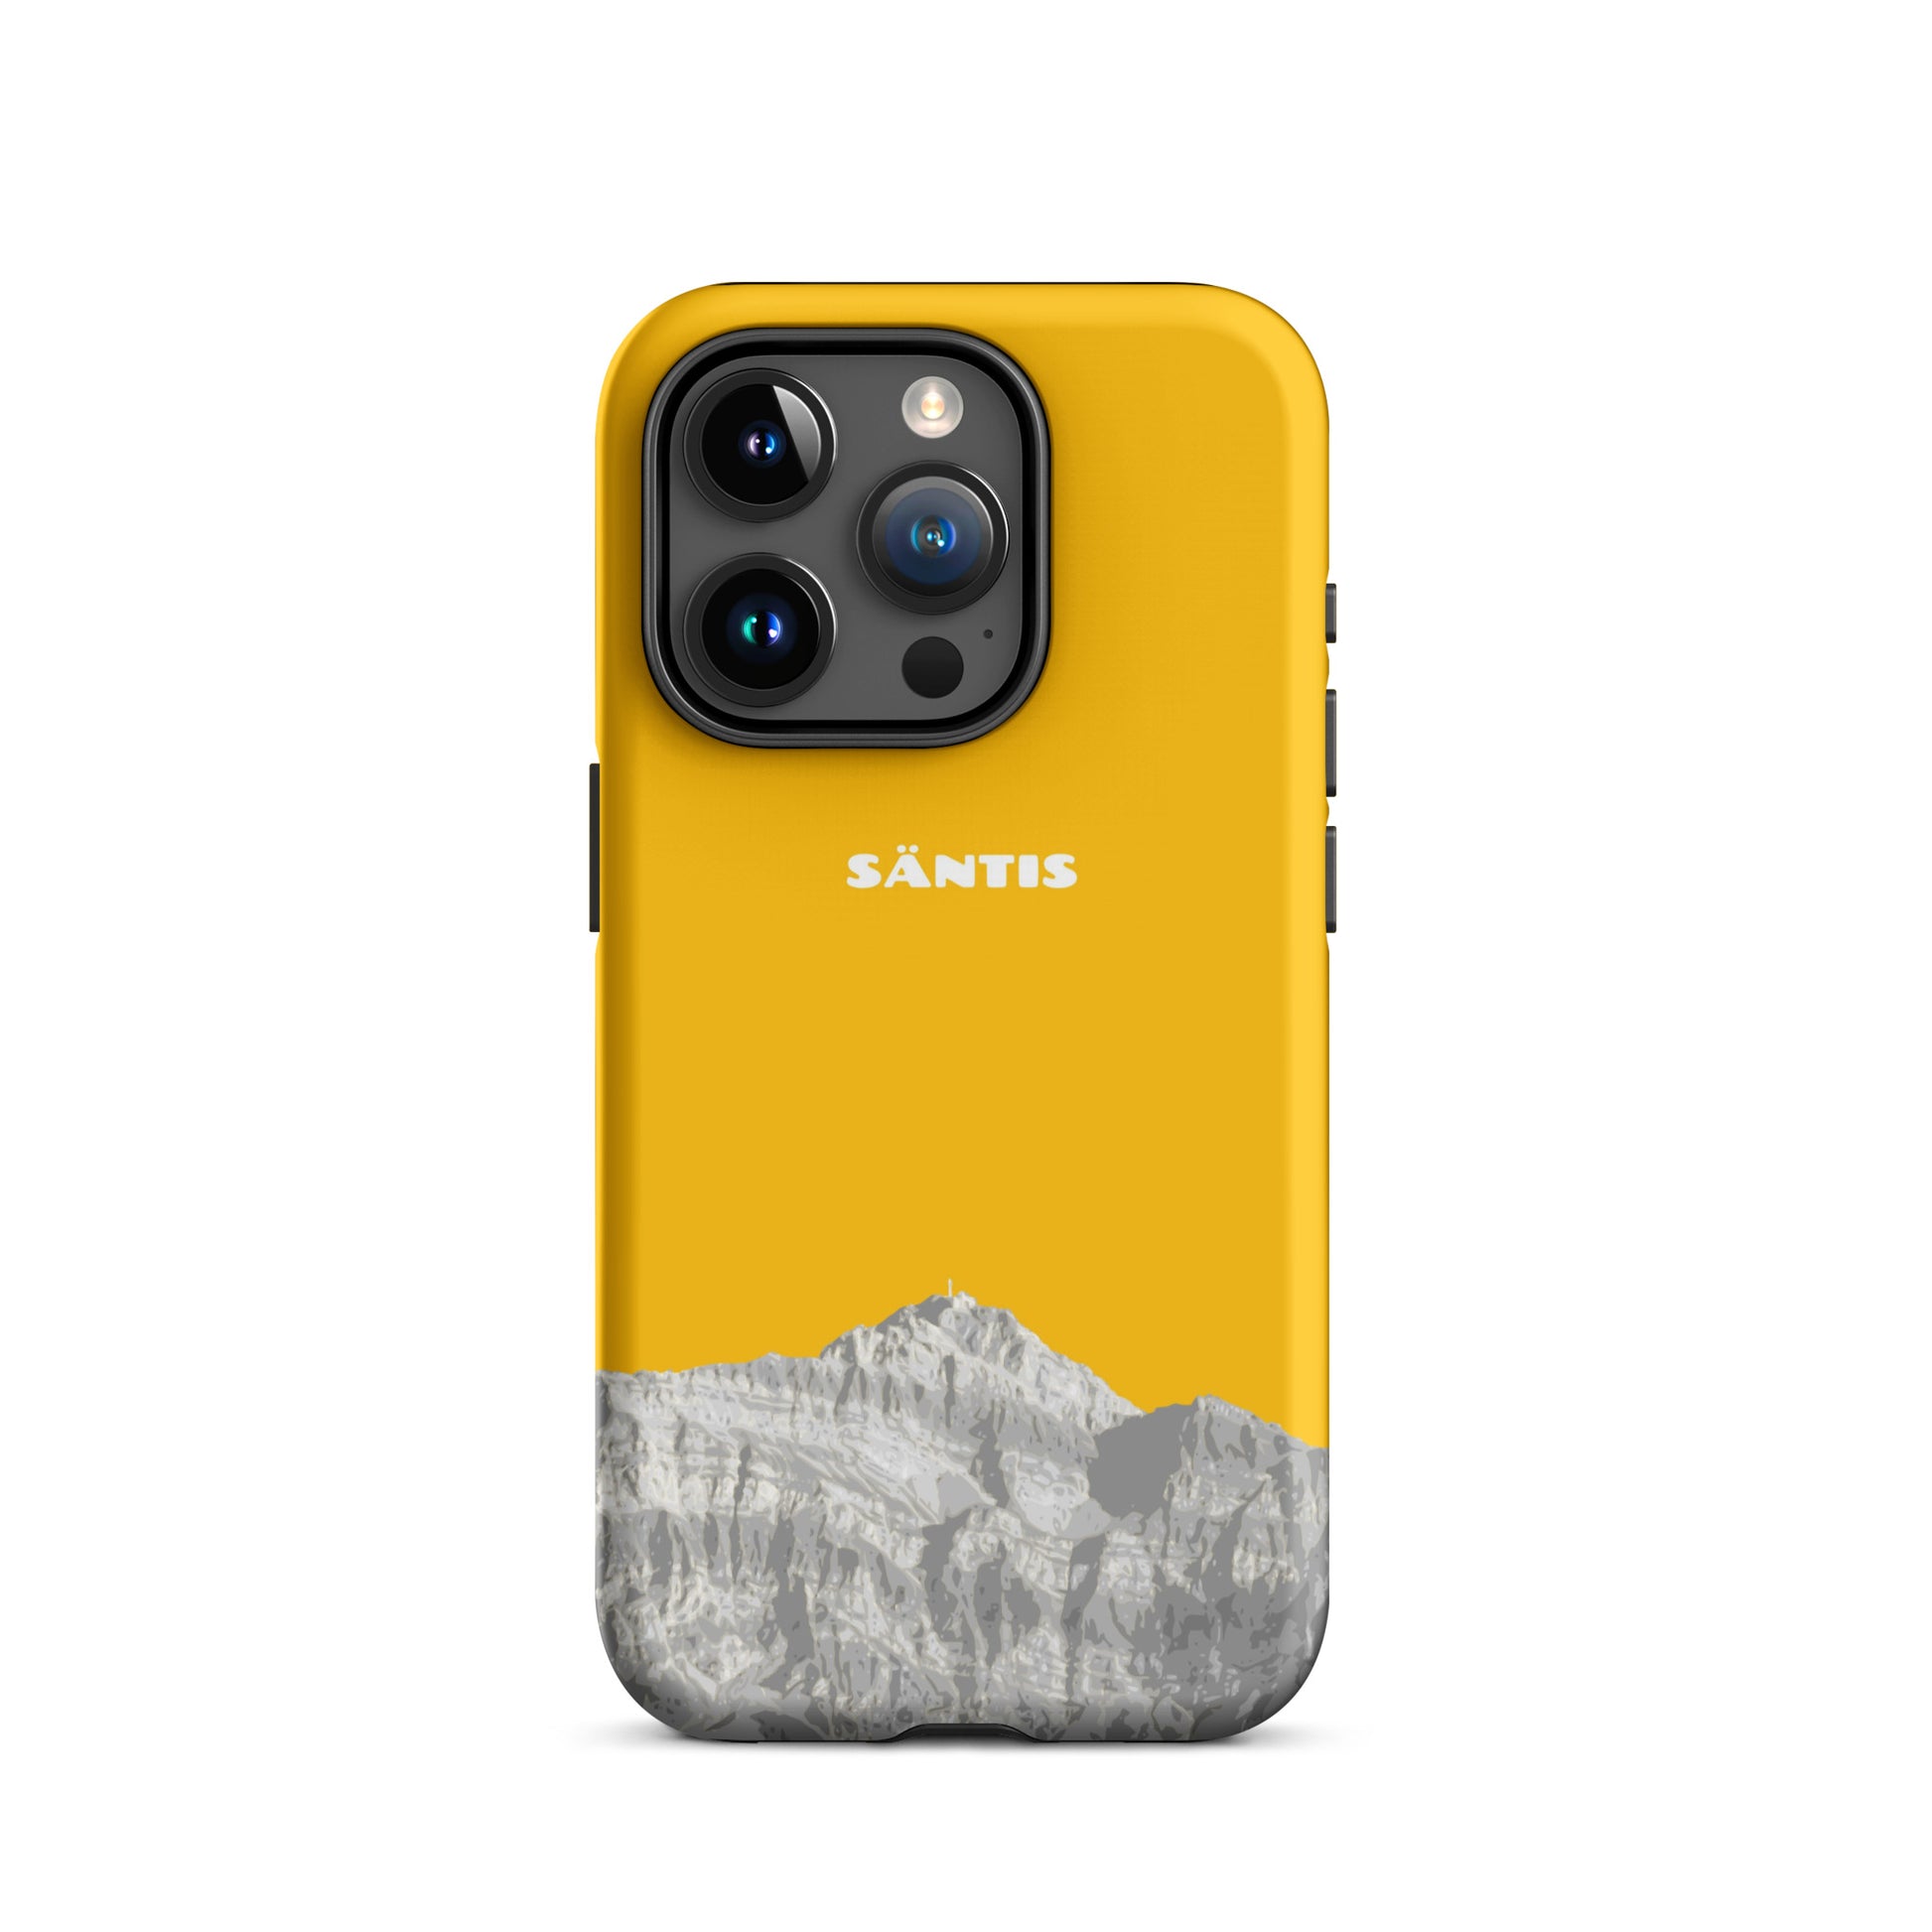 Hülle für das iPhone 15 Pro von Apple in der Farbe Goldgelb, dass den Säntis im Alpstein zeigt.